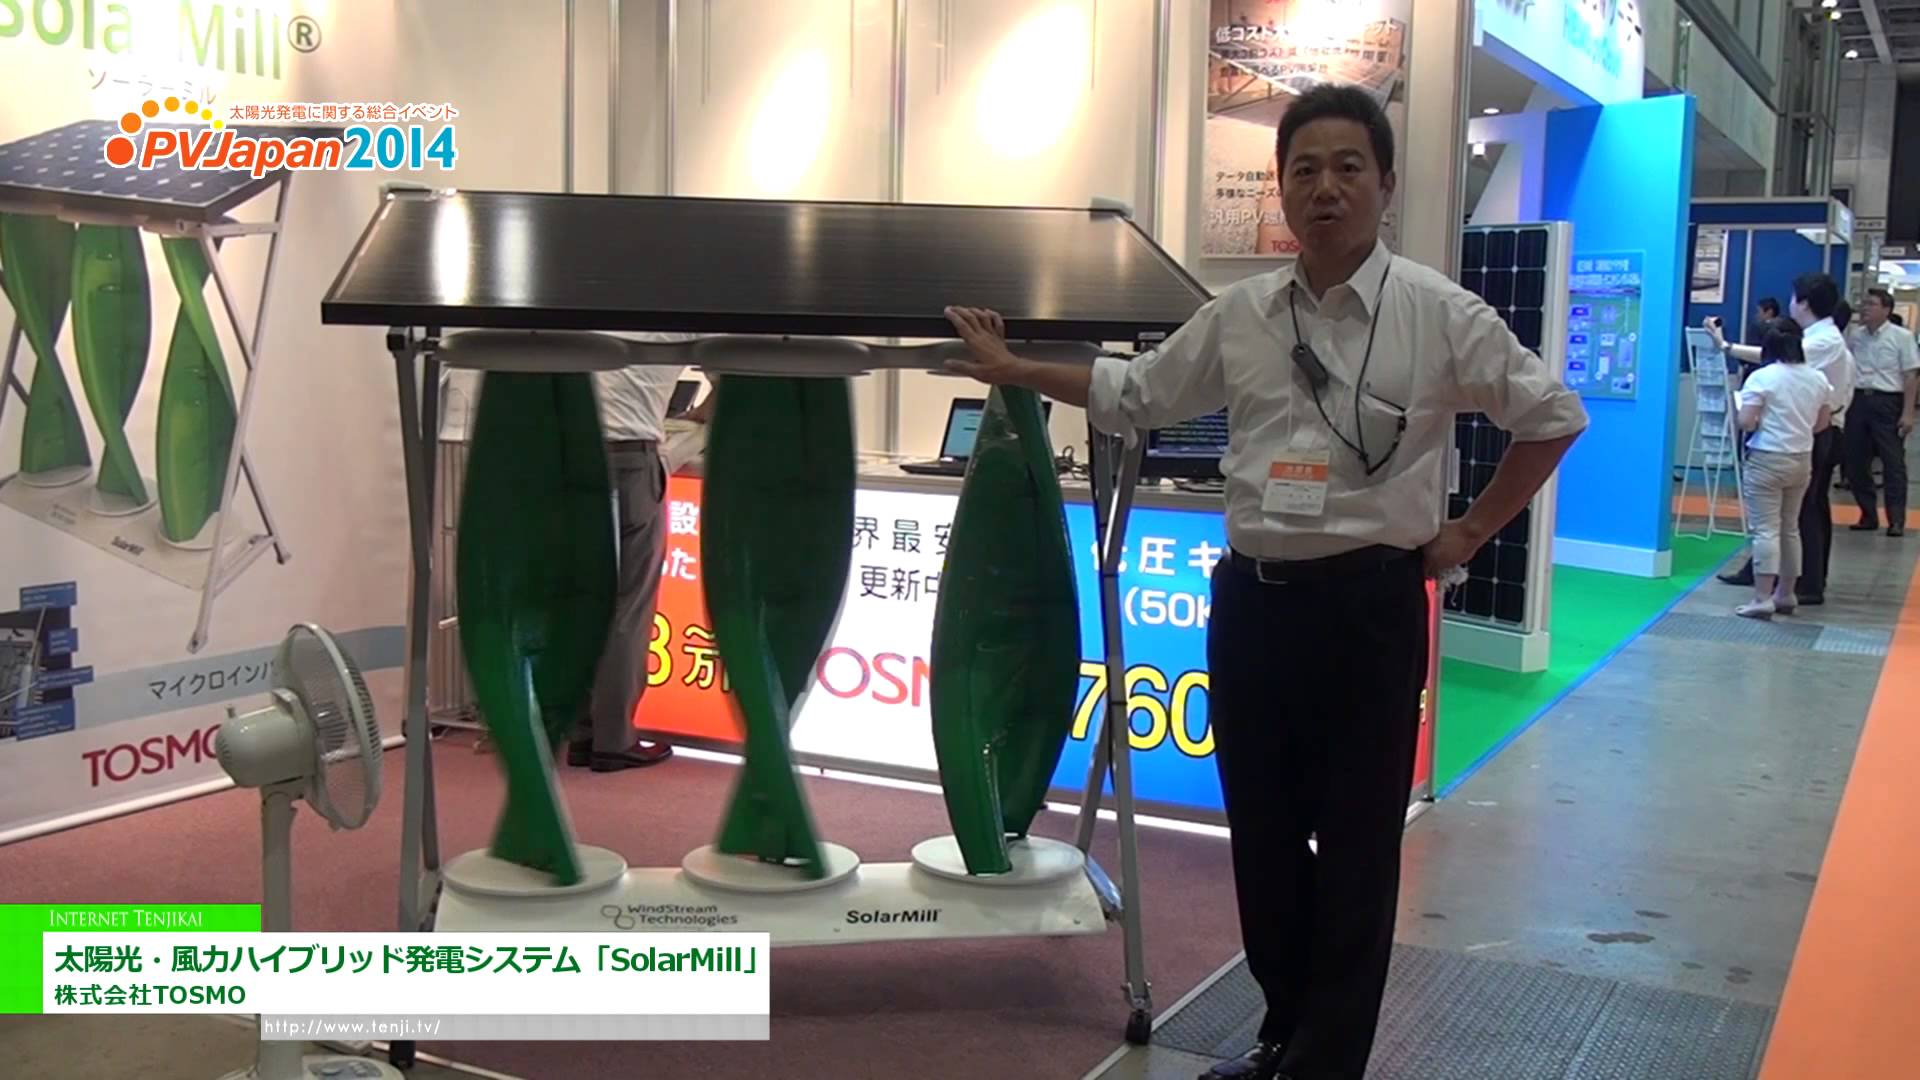 [PVJapan 2014] 太陽光・風力ハイブリッド発電システム「SolarMill」 - 株式会社TOSMO